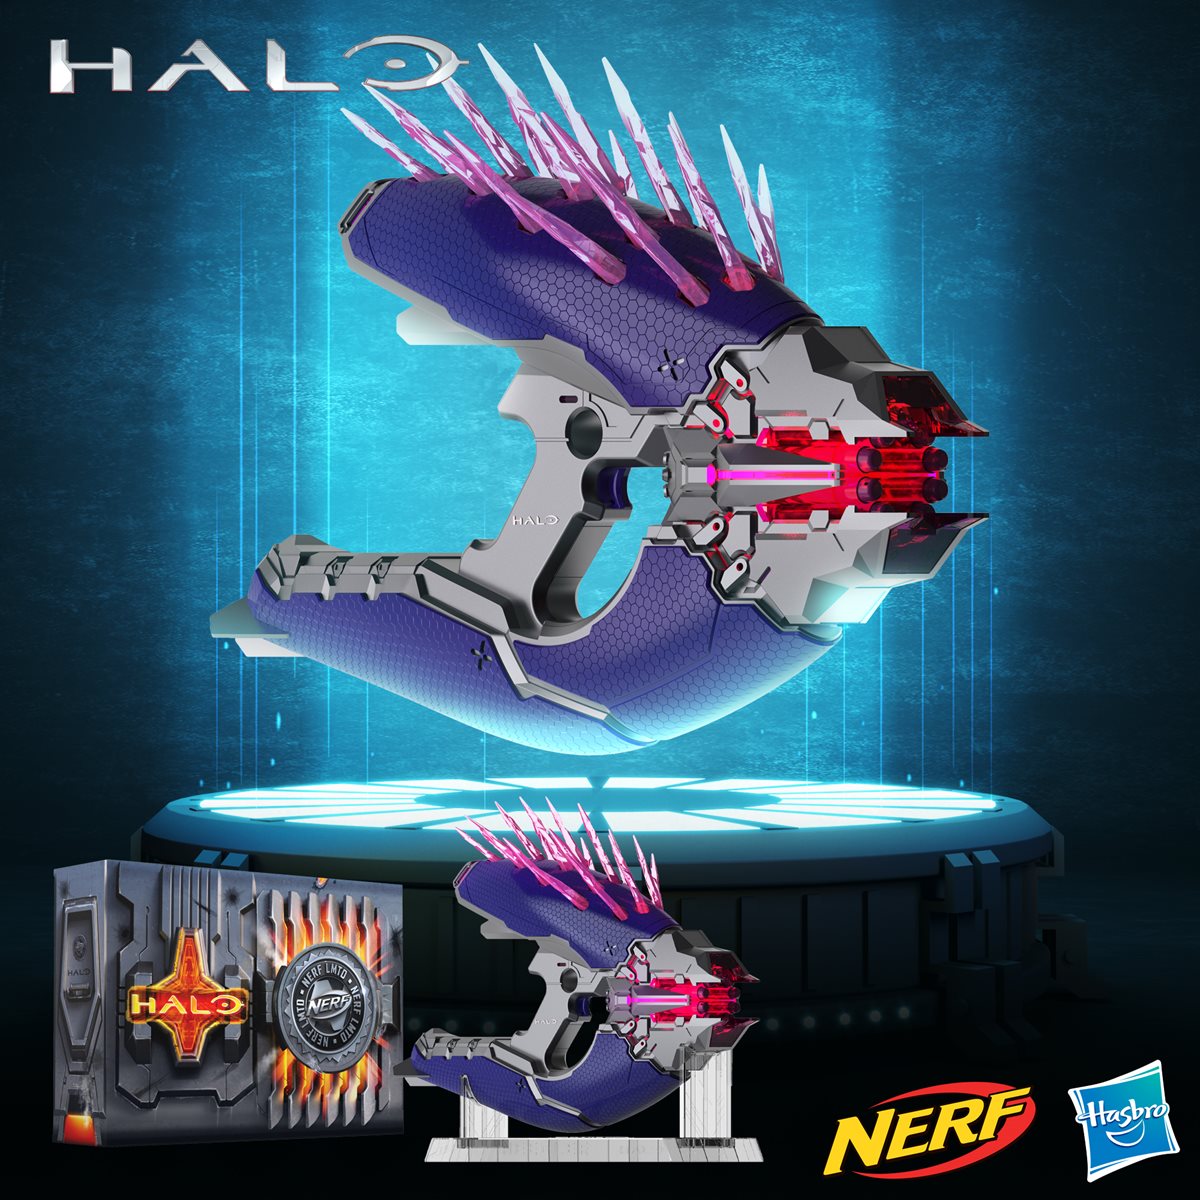 Nerf Halo Microshots Needler Blaster + 2 Darts 